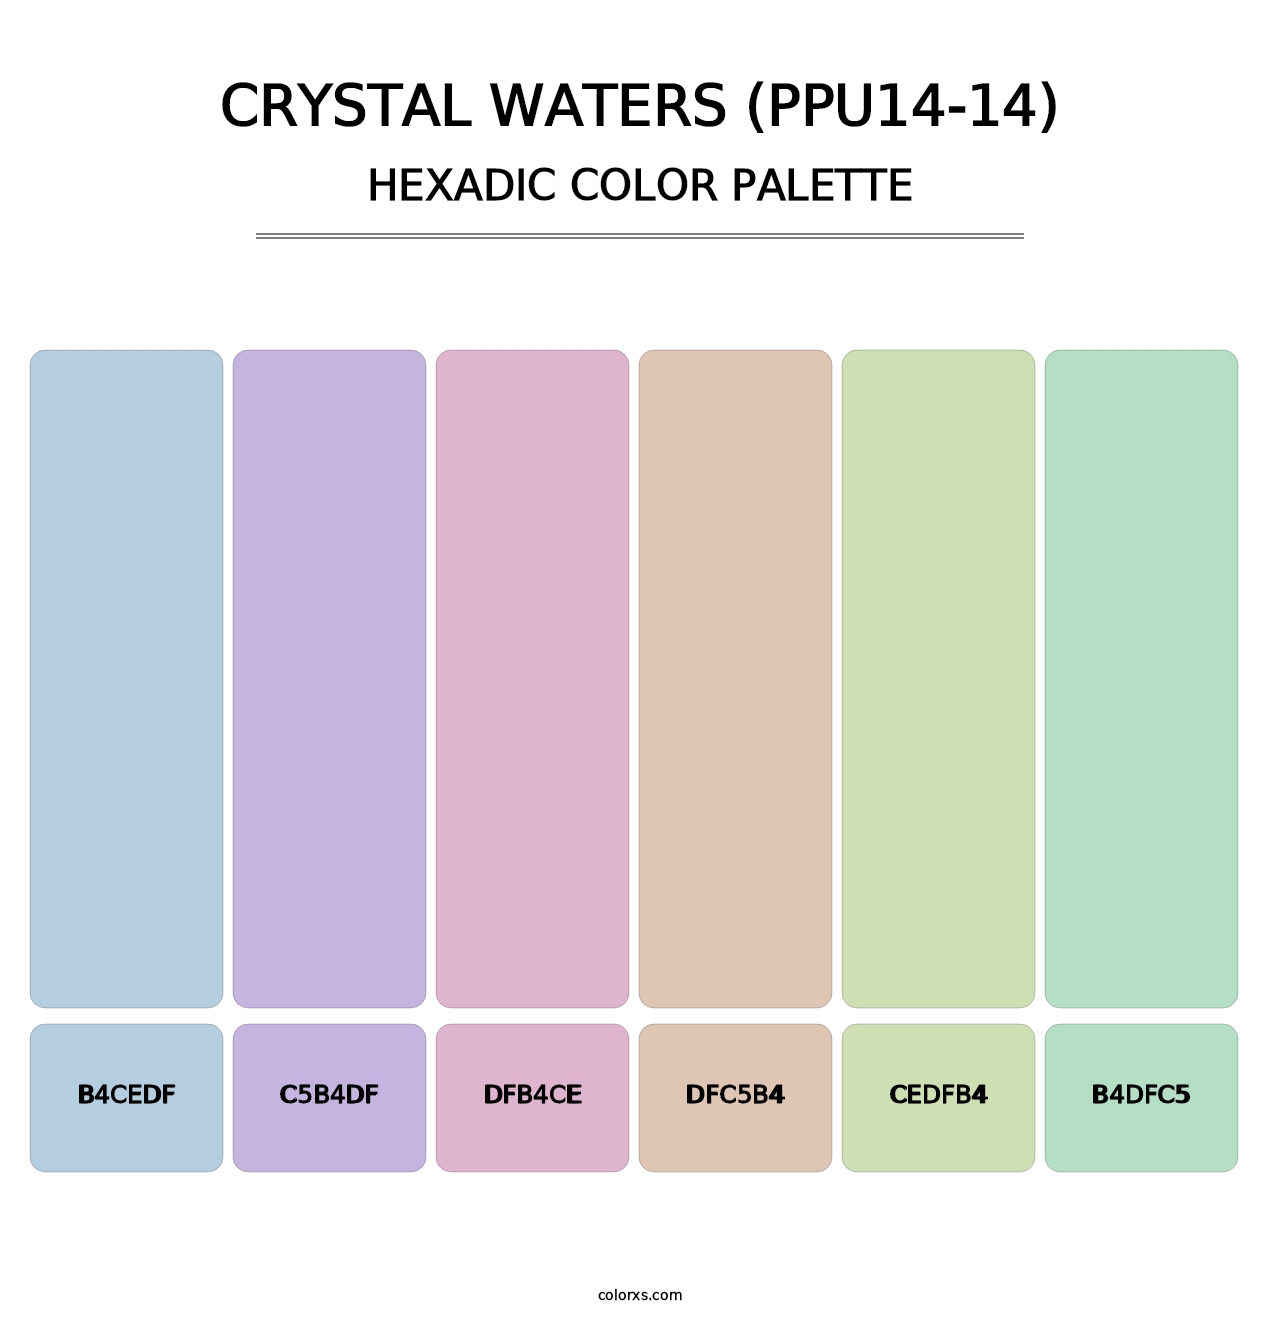 Crystal Waters (PPU14-14) - Hexadic Color Palette